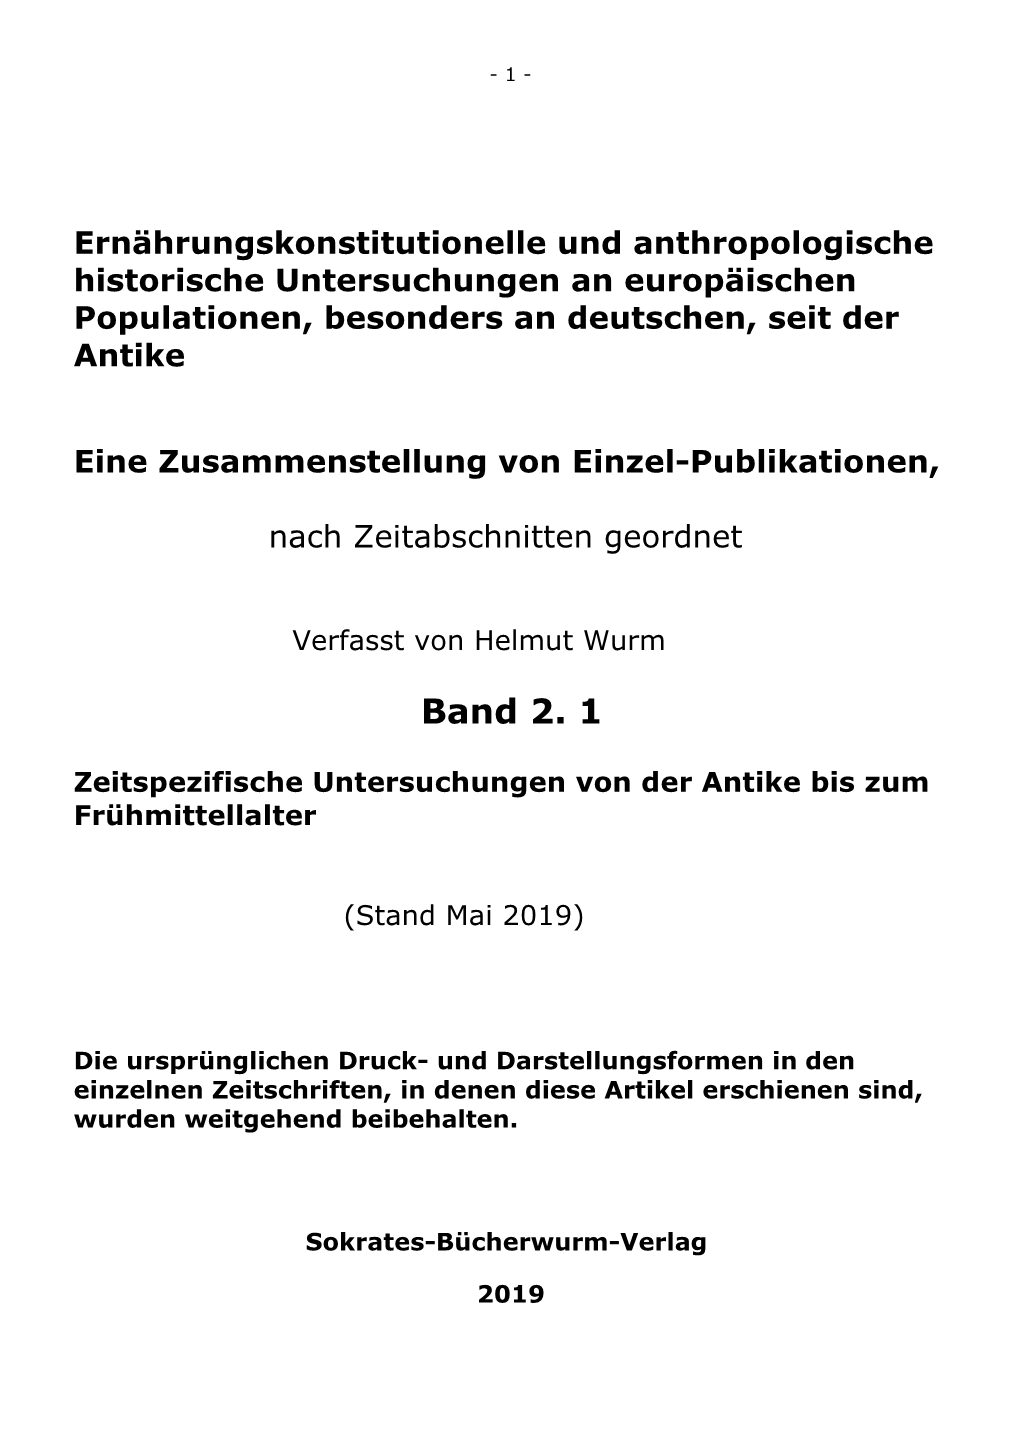 Aufsatzsammlung Anthropologie, Band 2.1., Antike Bis Fruehmittelalter